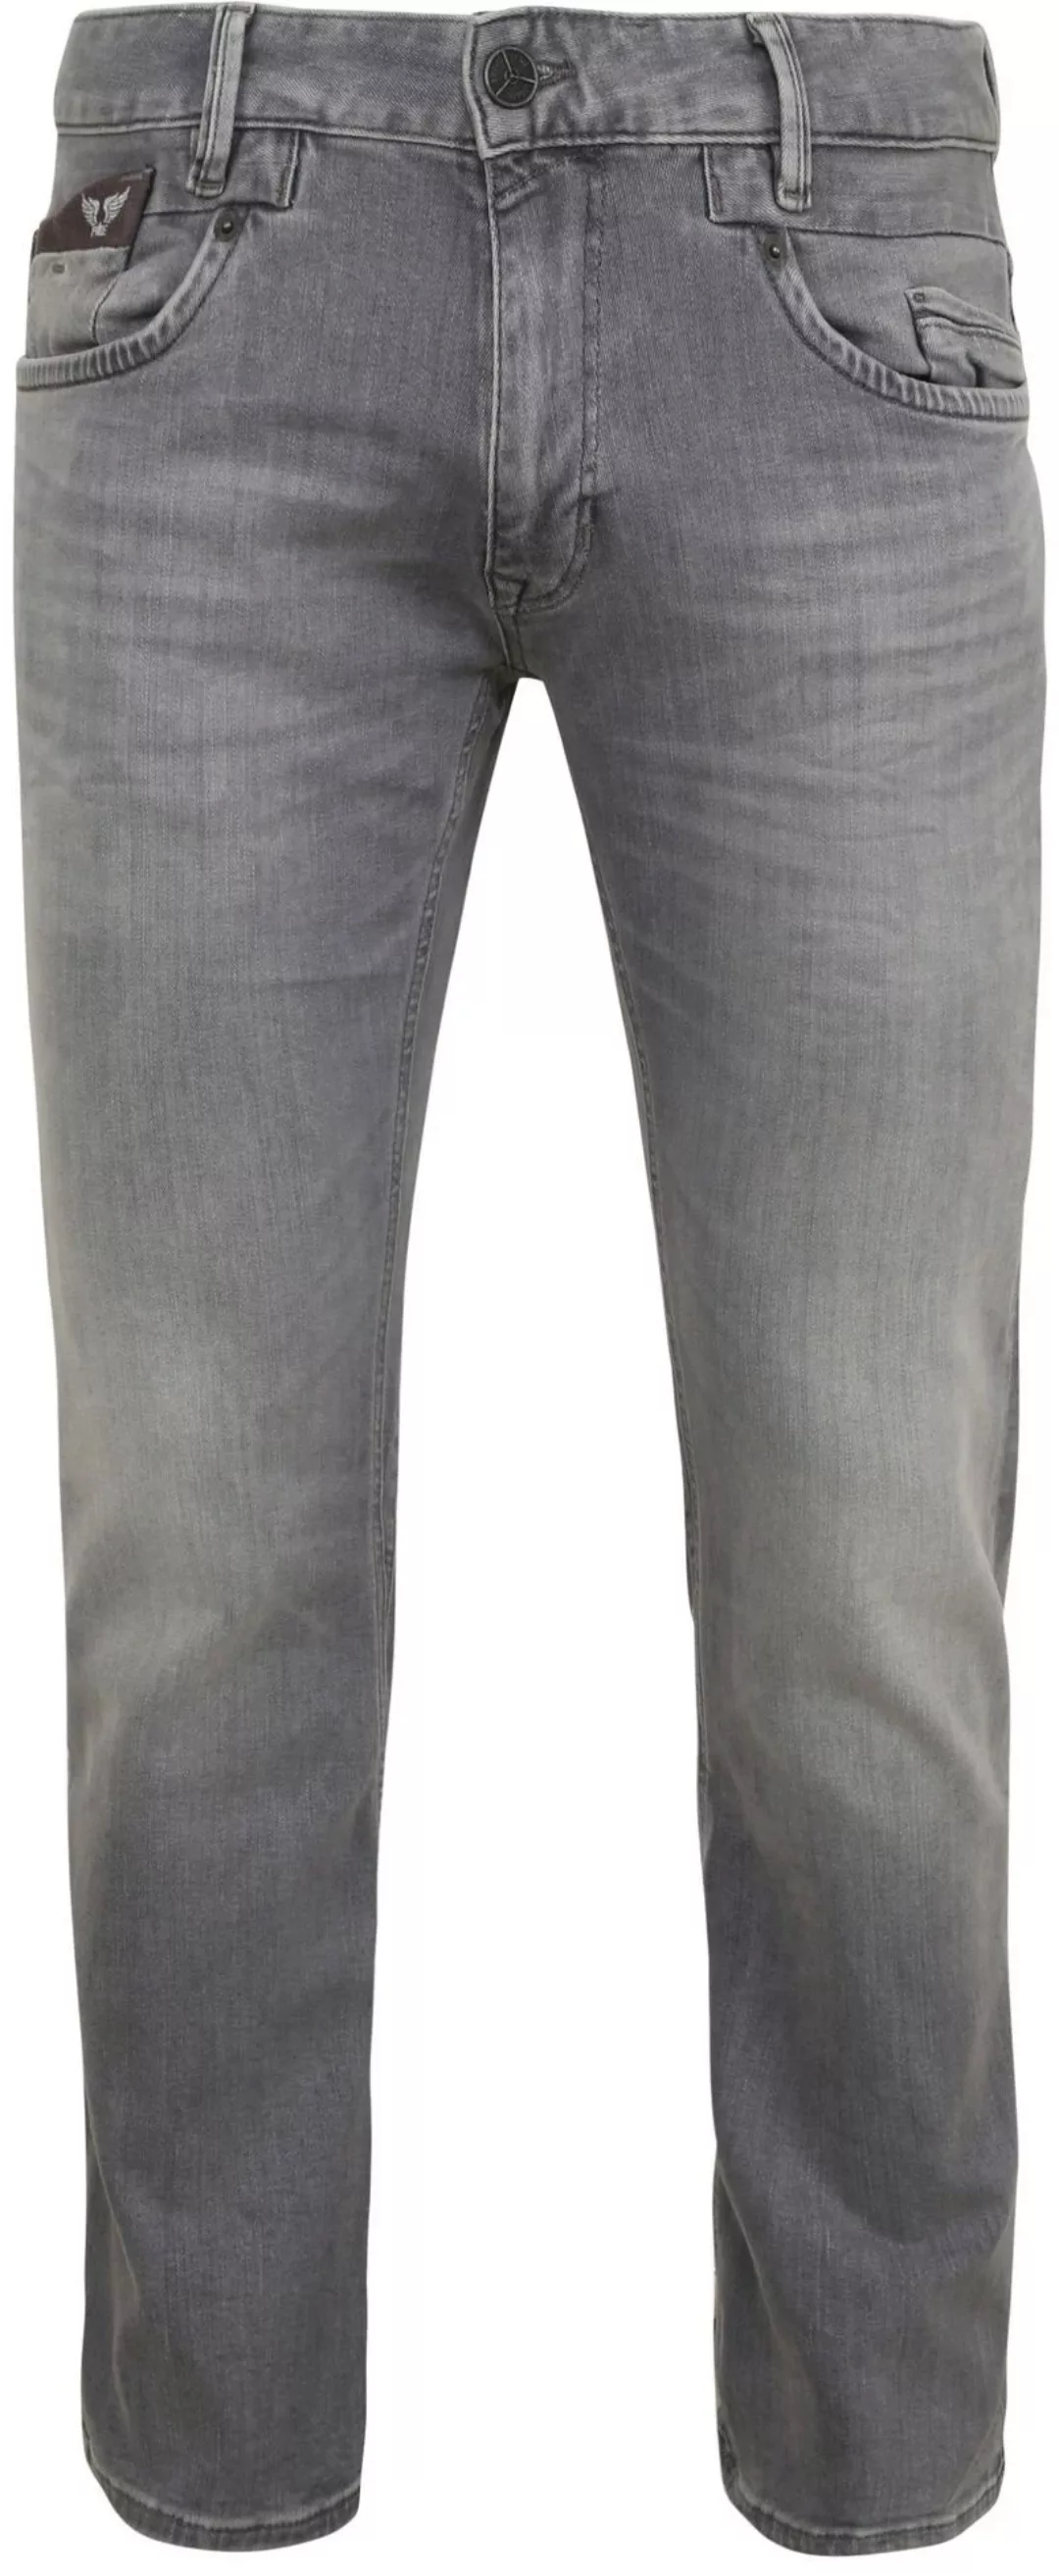 PME Legend Commander 3.0 Jeans Grau - Größe W 38 - L 34 günstig online kaufen